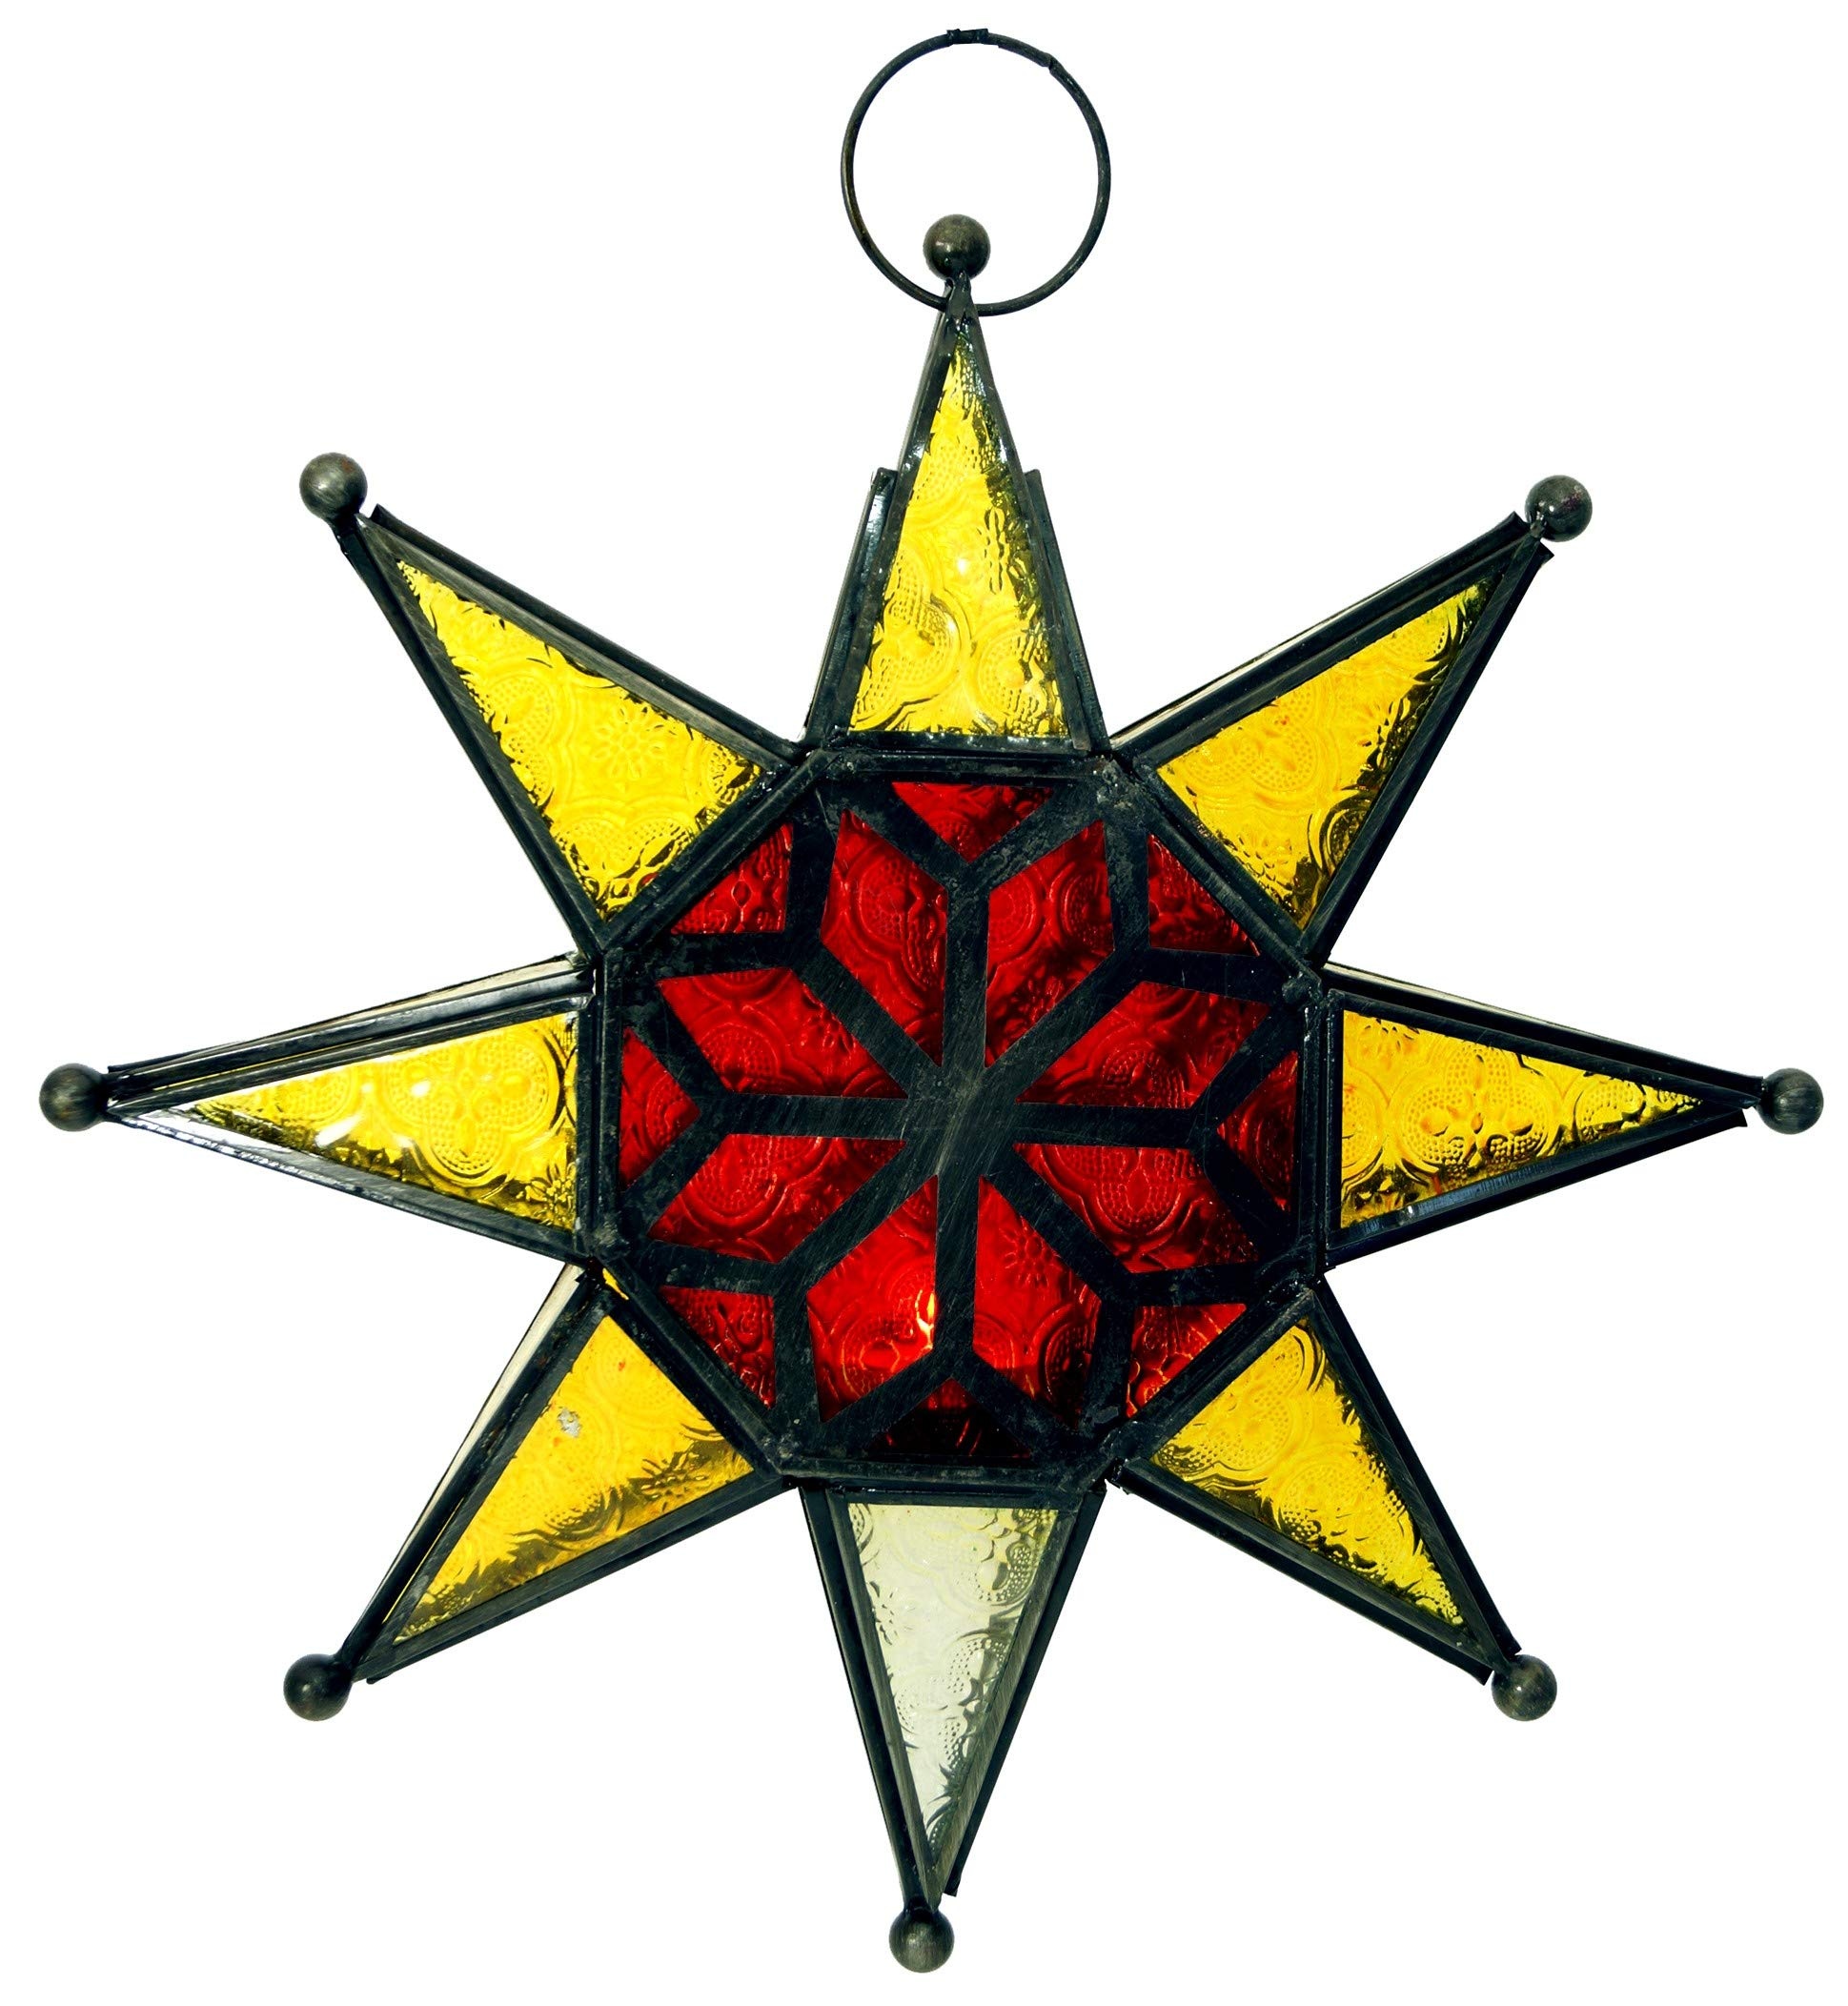 GURU SHOP Orientalischer Glas Stern in Marrokanischem Design, Glas Laterne, Windlicht - Modell 2, Mehrfarbig, 30x30x5 cm, Teelichthalter & Kerzenhalter